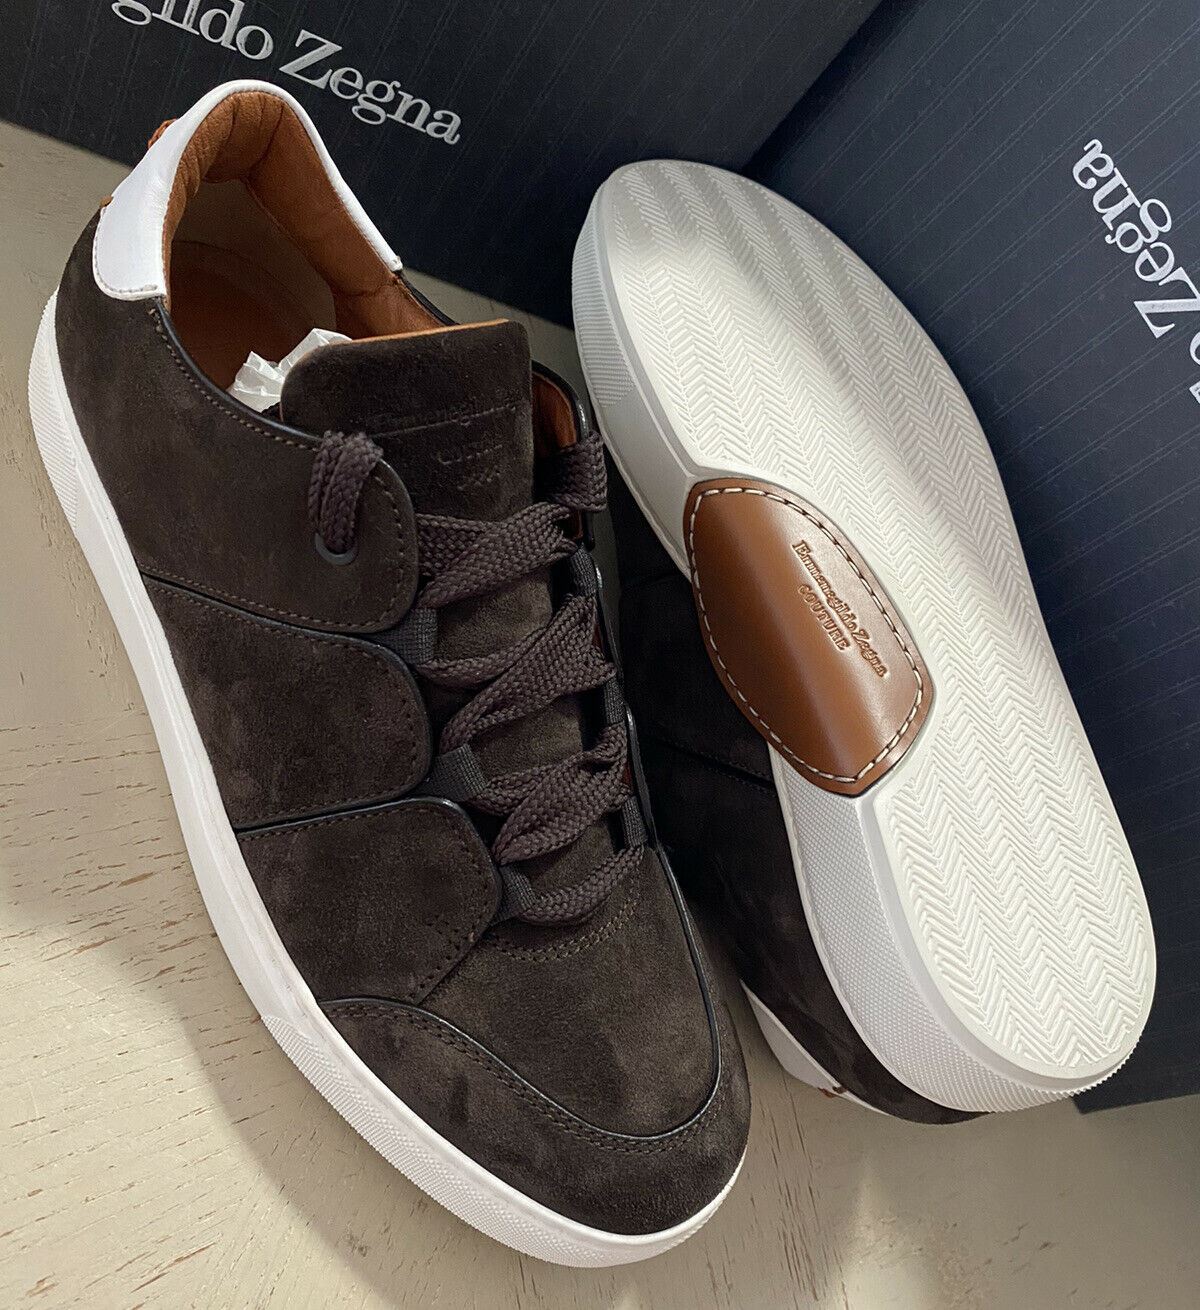 Новые замшевые/кожаные кроссовки Ermenegildo Zegna Couture за 850 долларов США Темно-коричневые 11 США